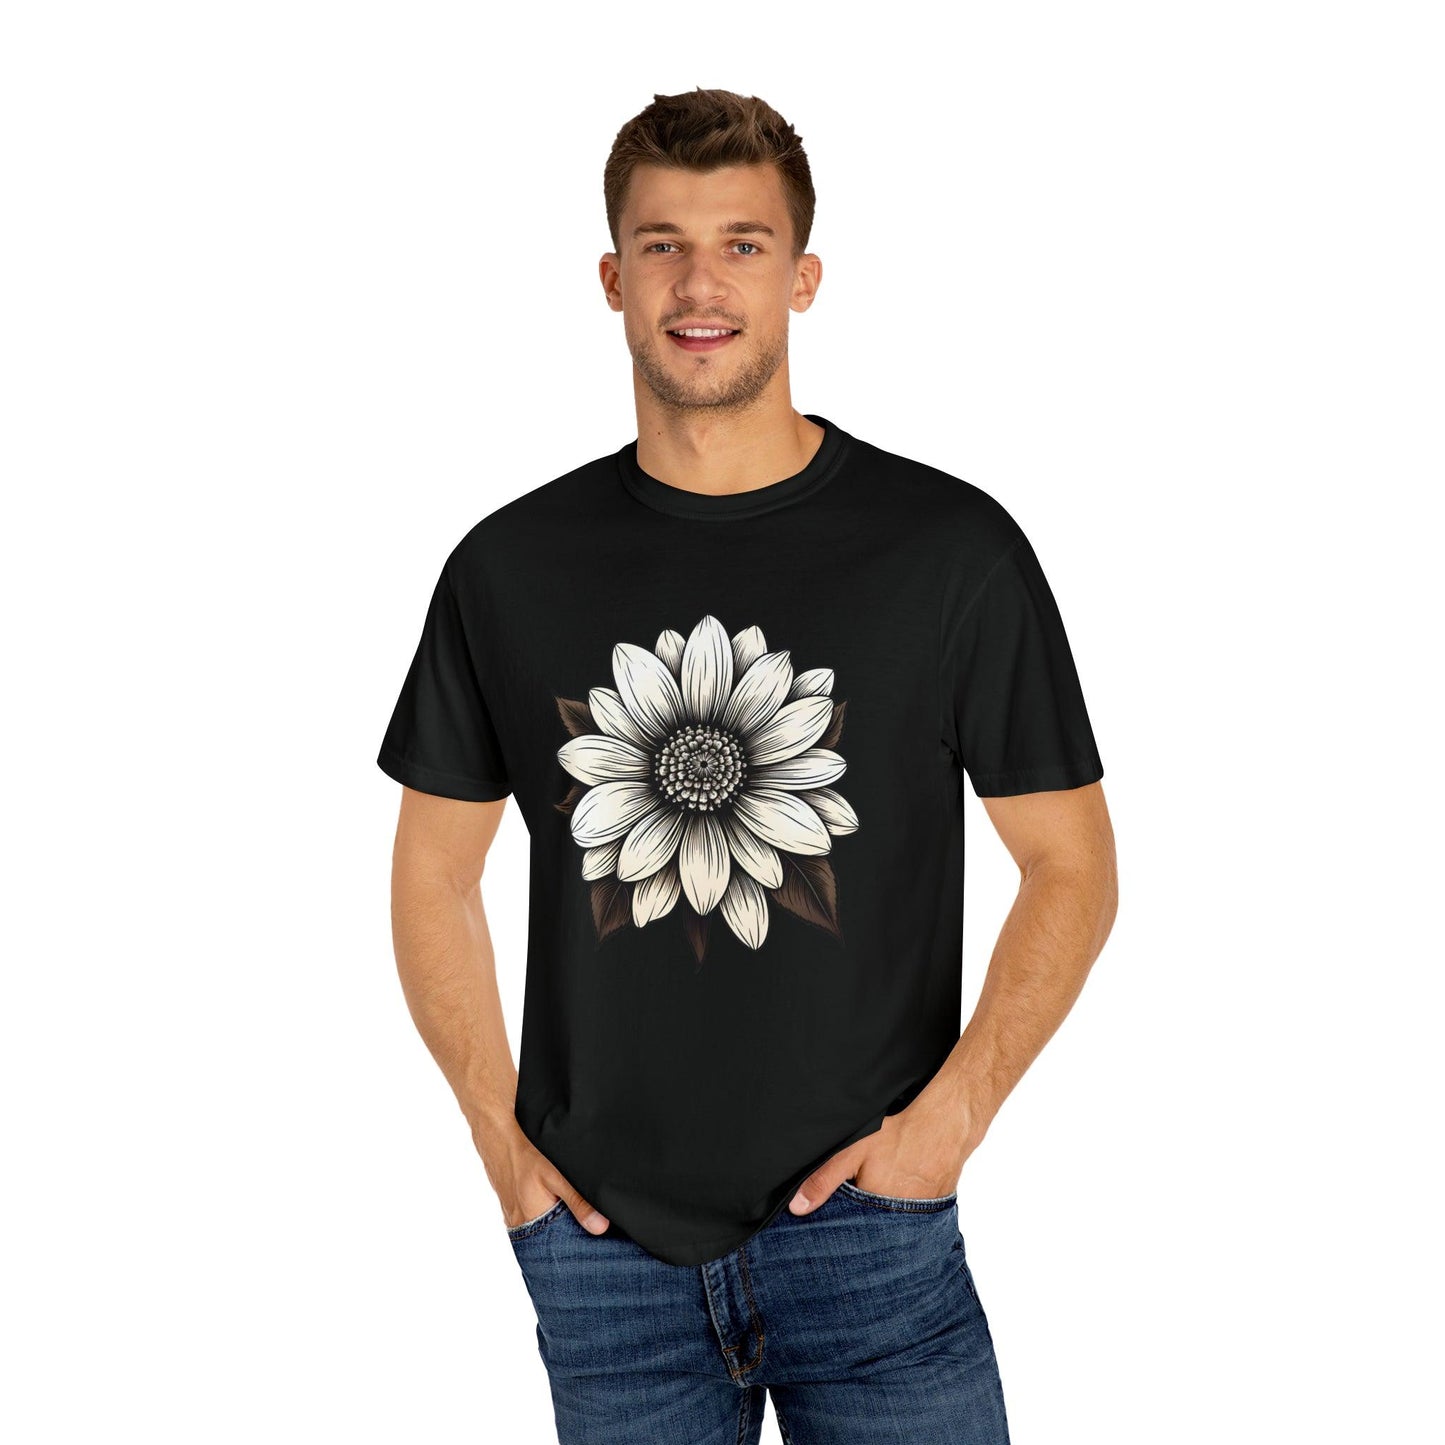 Sunflower Shirt Flower Shirt Aesthetic  Women Top Floral Graphic Tee Floral Shirt Flower T-shirt, Wild Flower Shirt Gift For Her